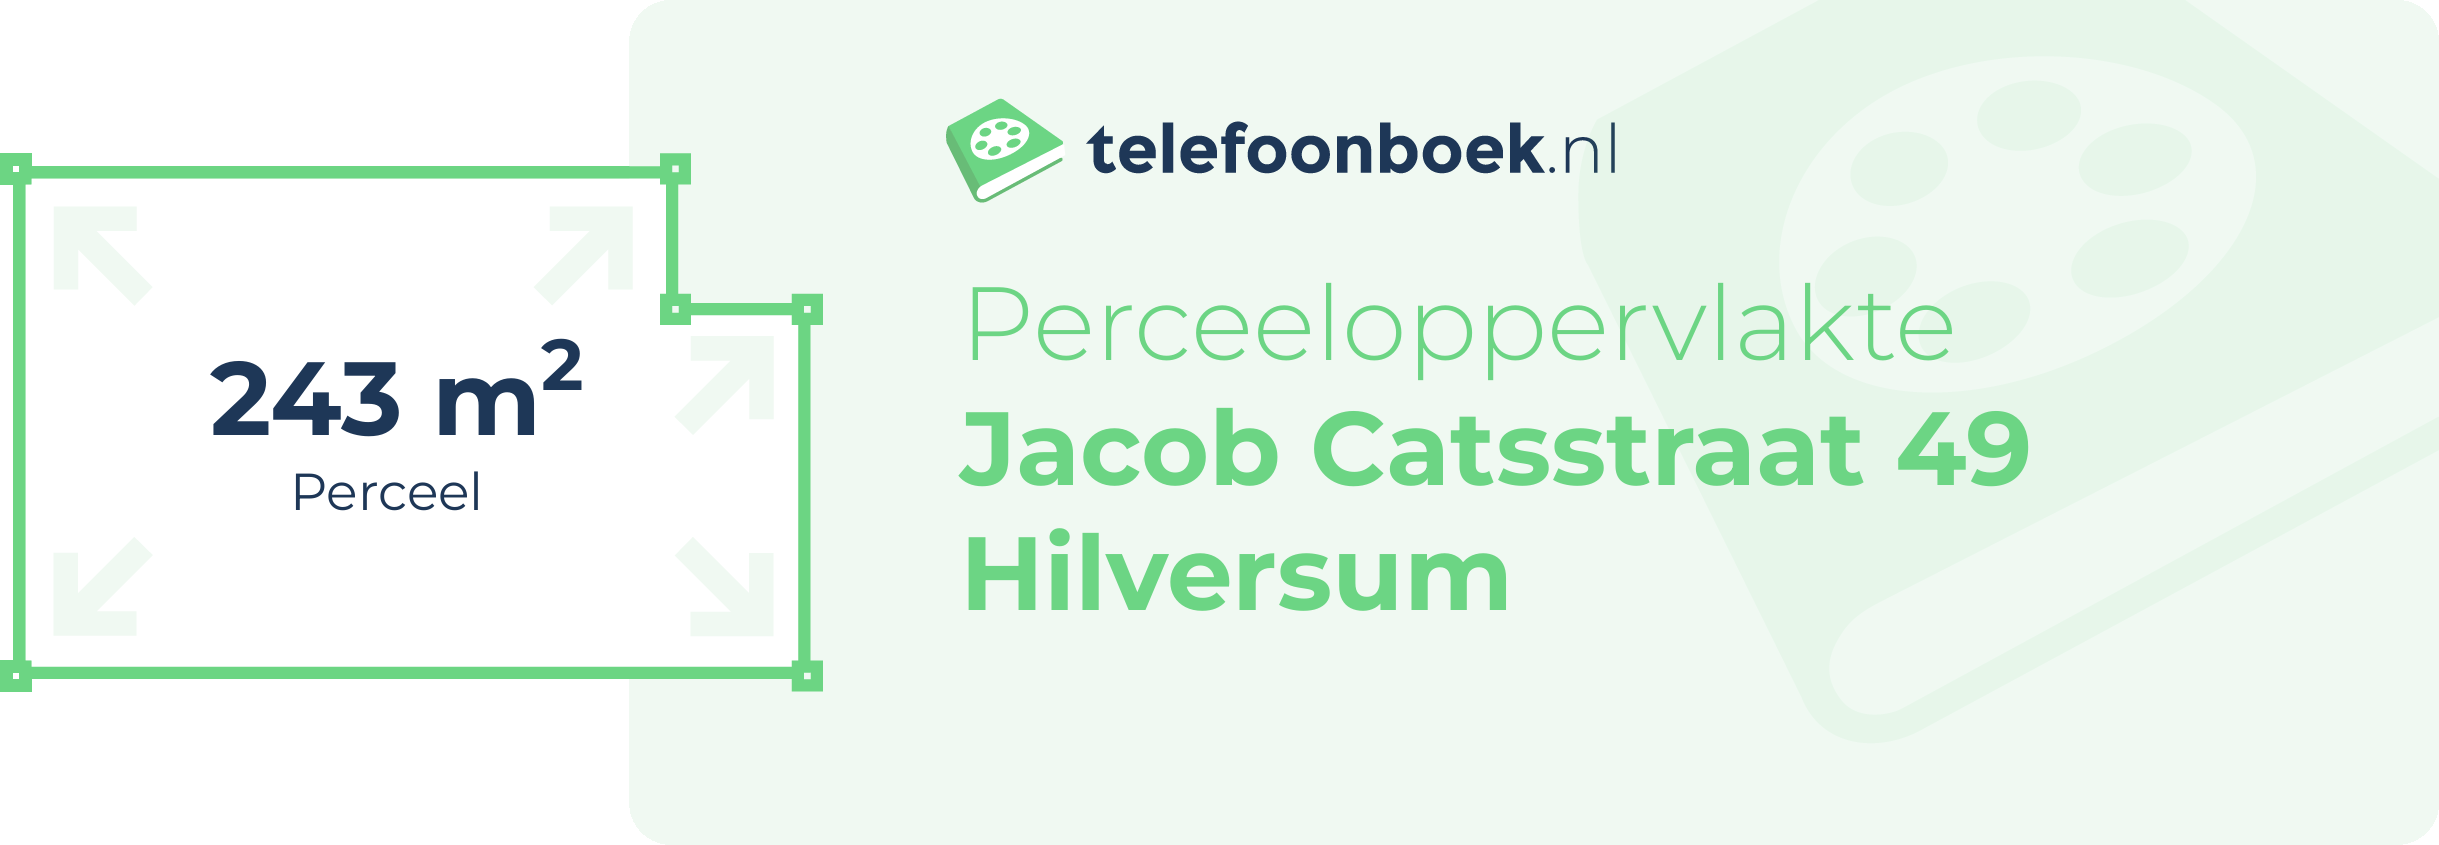 Perceeloppervlakte Jacob Catsstraat 49 Hilversum